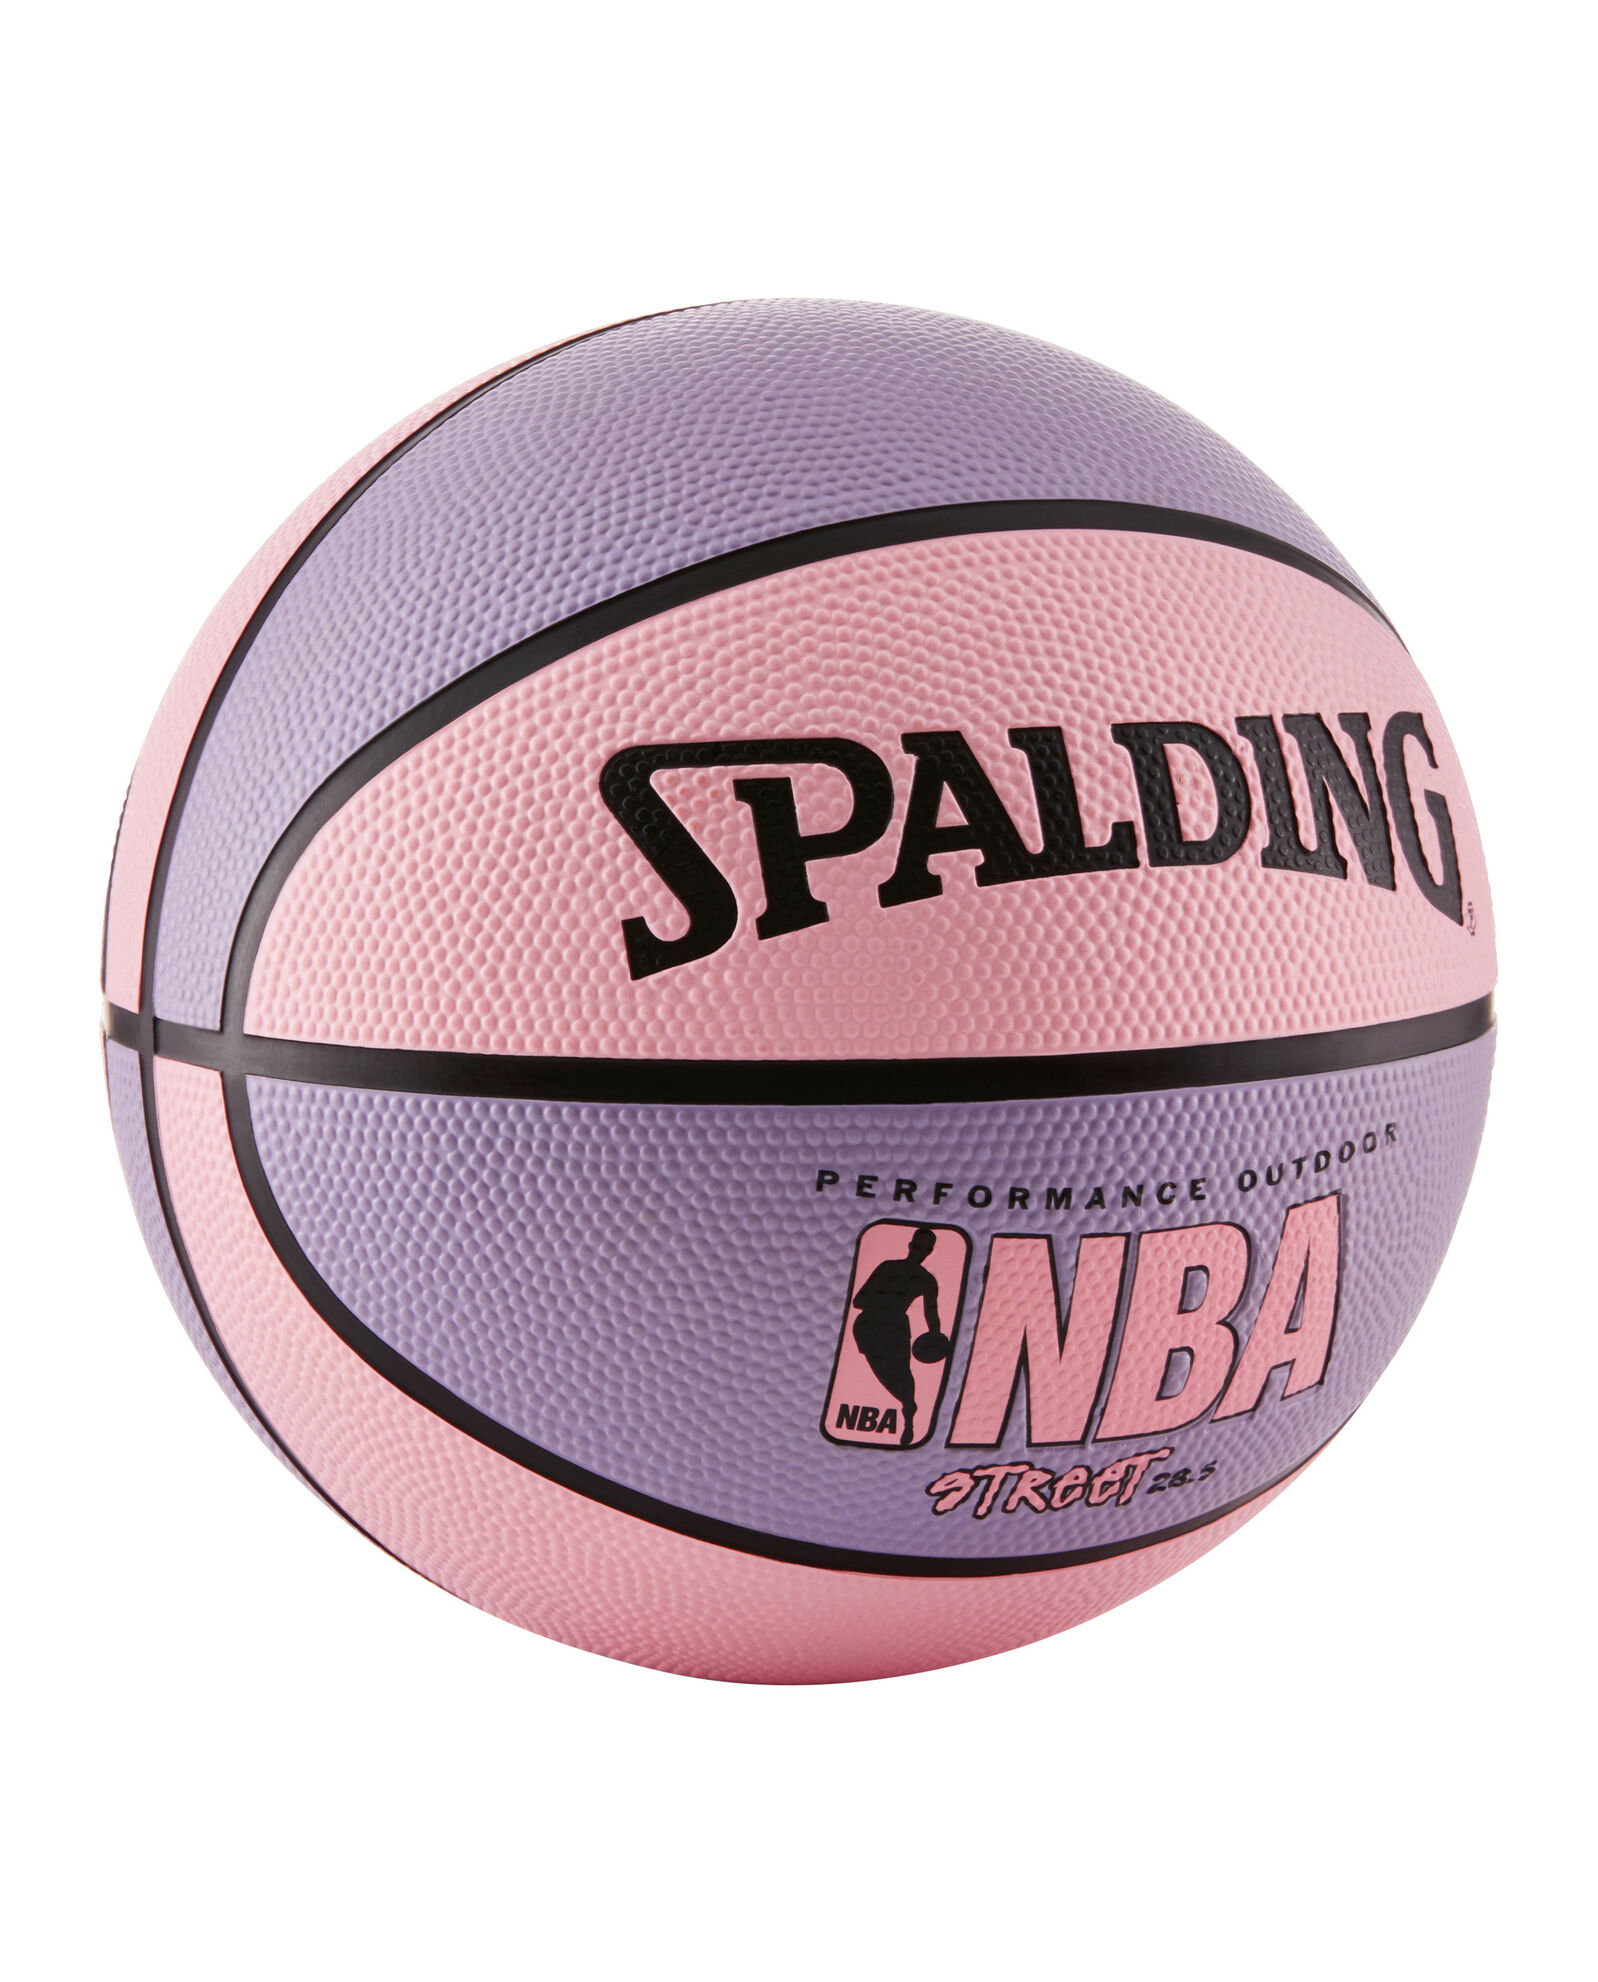 Spalding NBA Street Pink 28.5